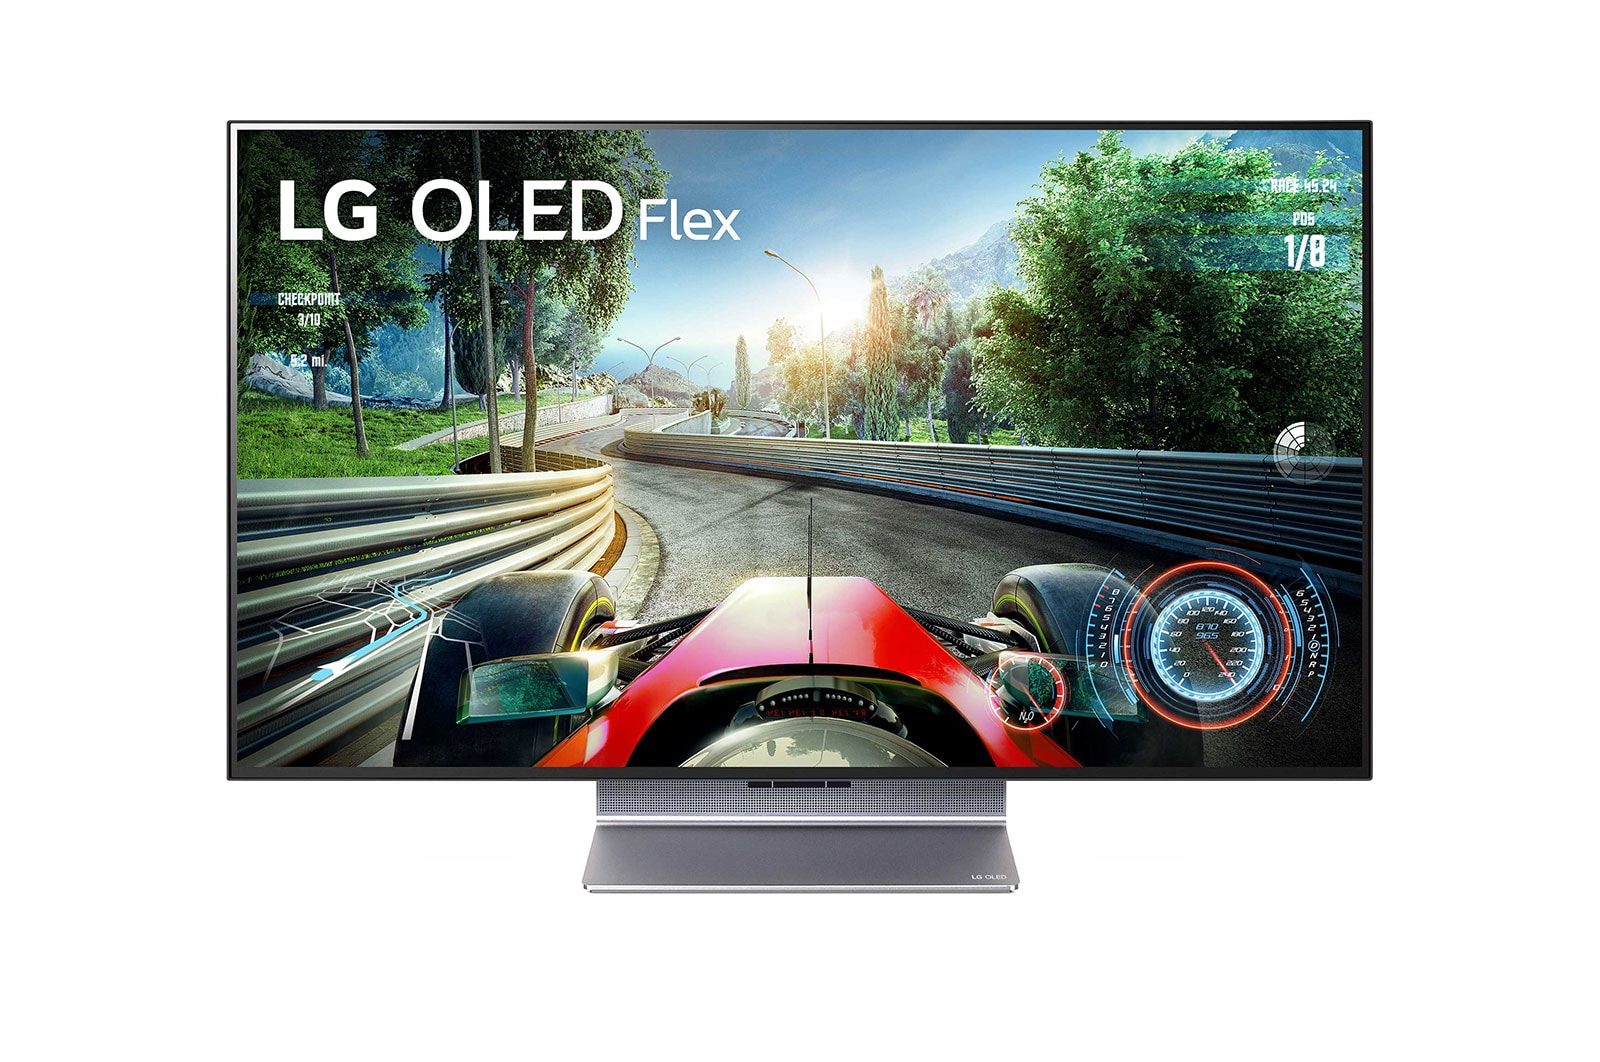 LG 42LX3Q6LA (2022) OLED Flex HDR 4K Ultra HD Smart TV, 42 inch with  Flexible Display